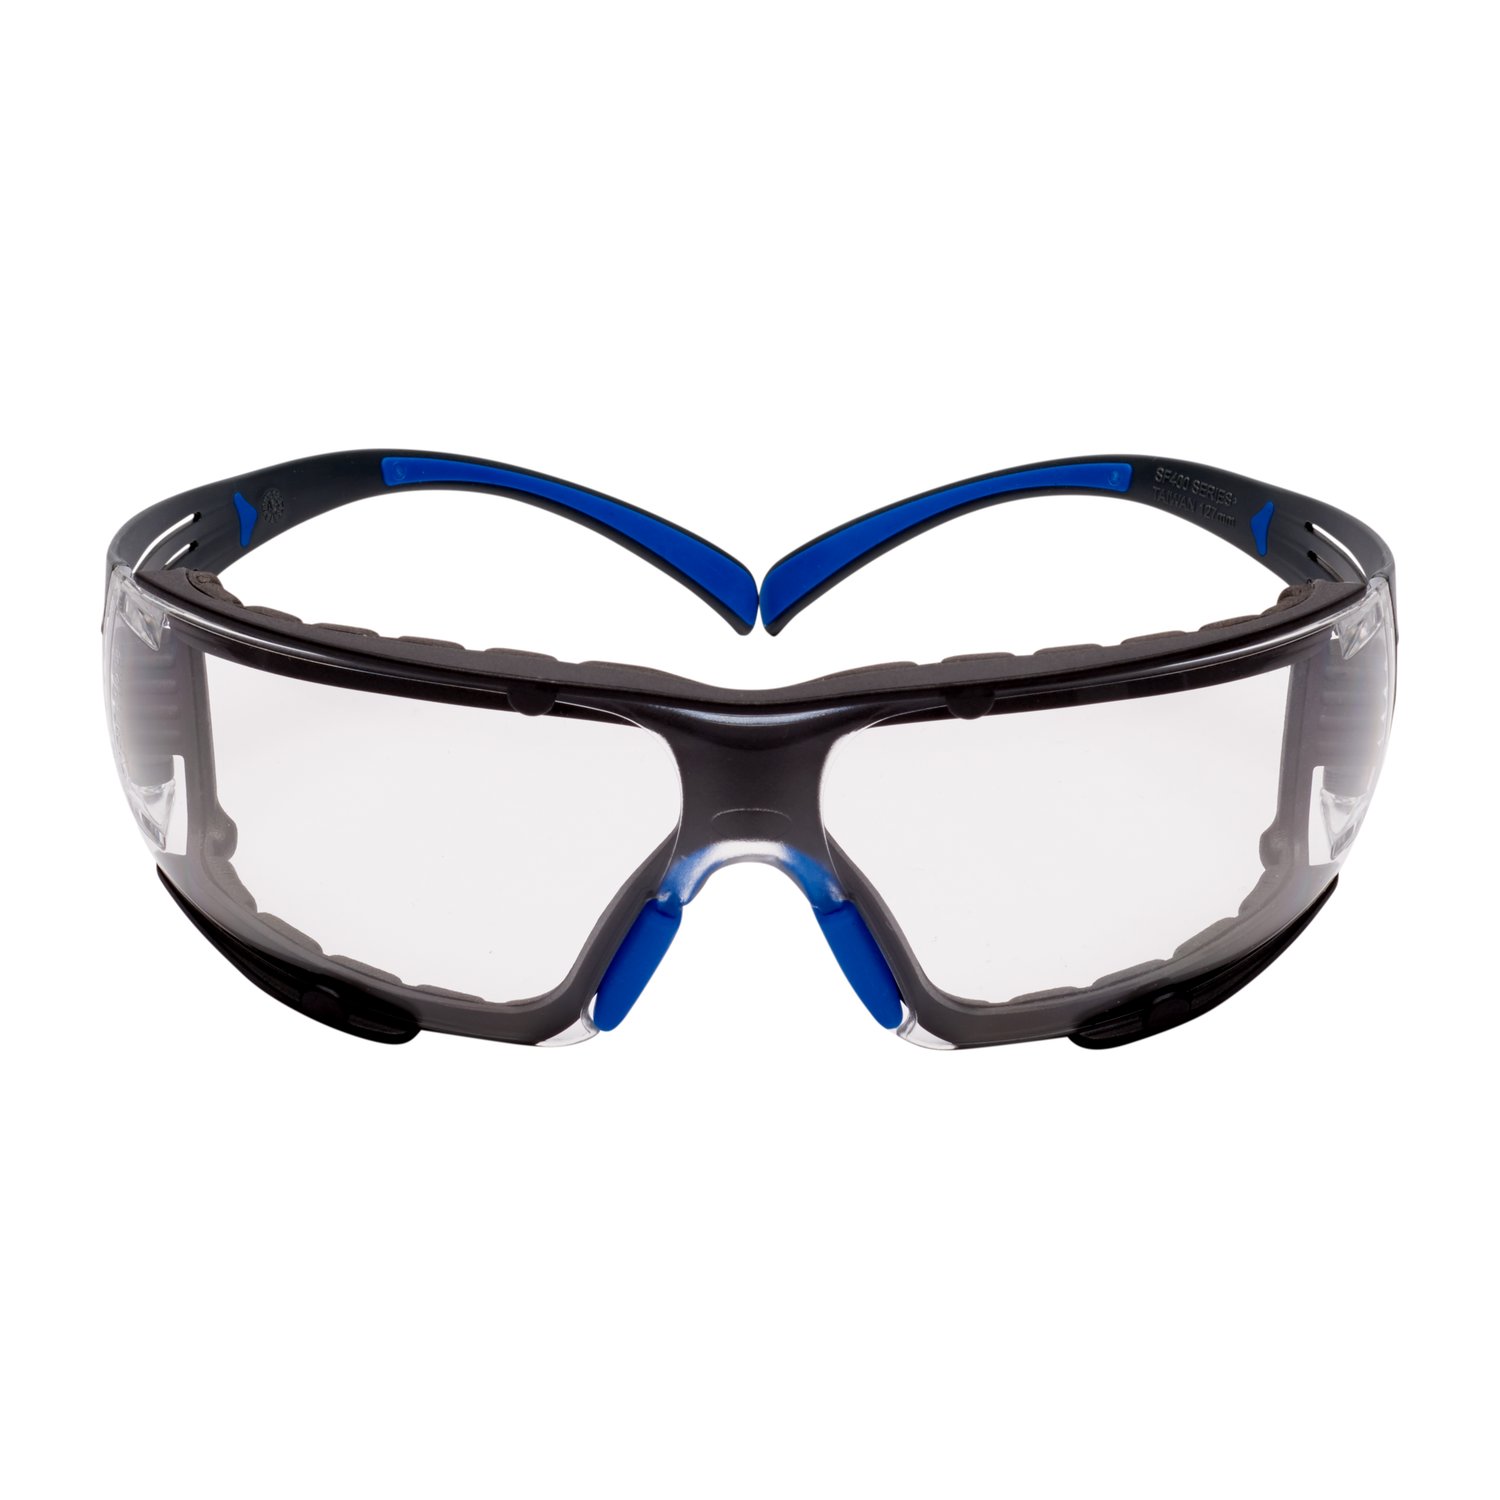 7100156104 - 3M SecureFit Safety Glasses SF401SGAF-BLU-F, Blue/Gray, Clear
Scotchgard Anti-fog Lens, Foam Gasket, 20 EA/Case